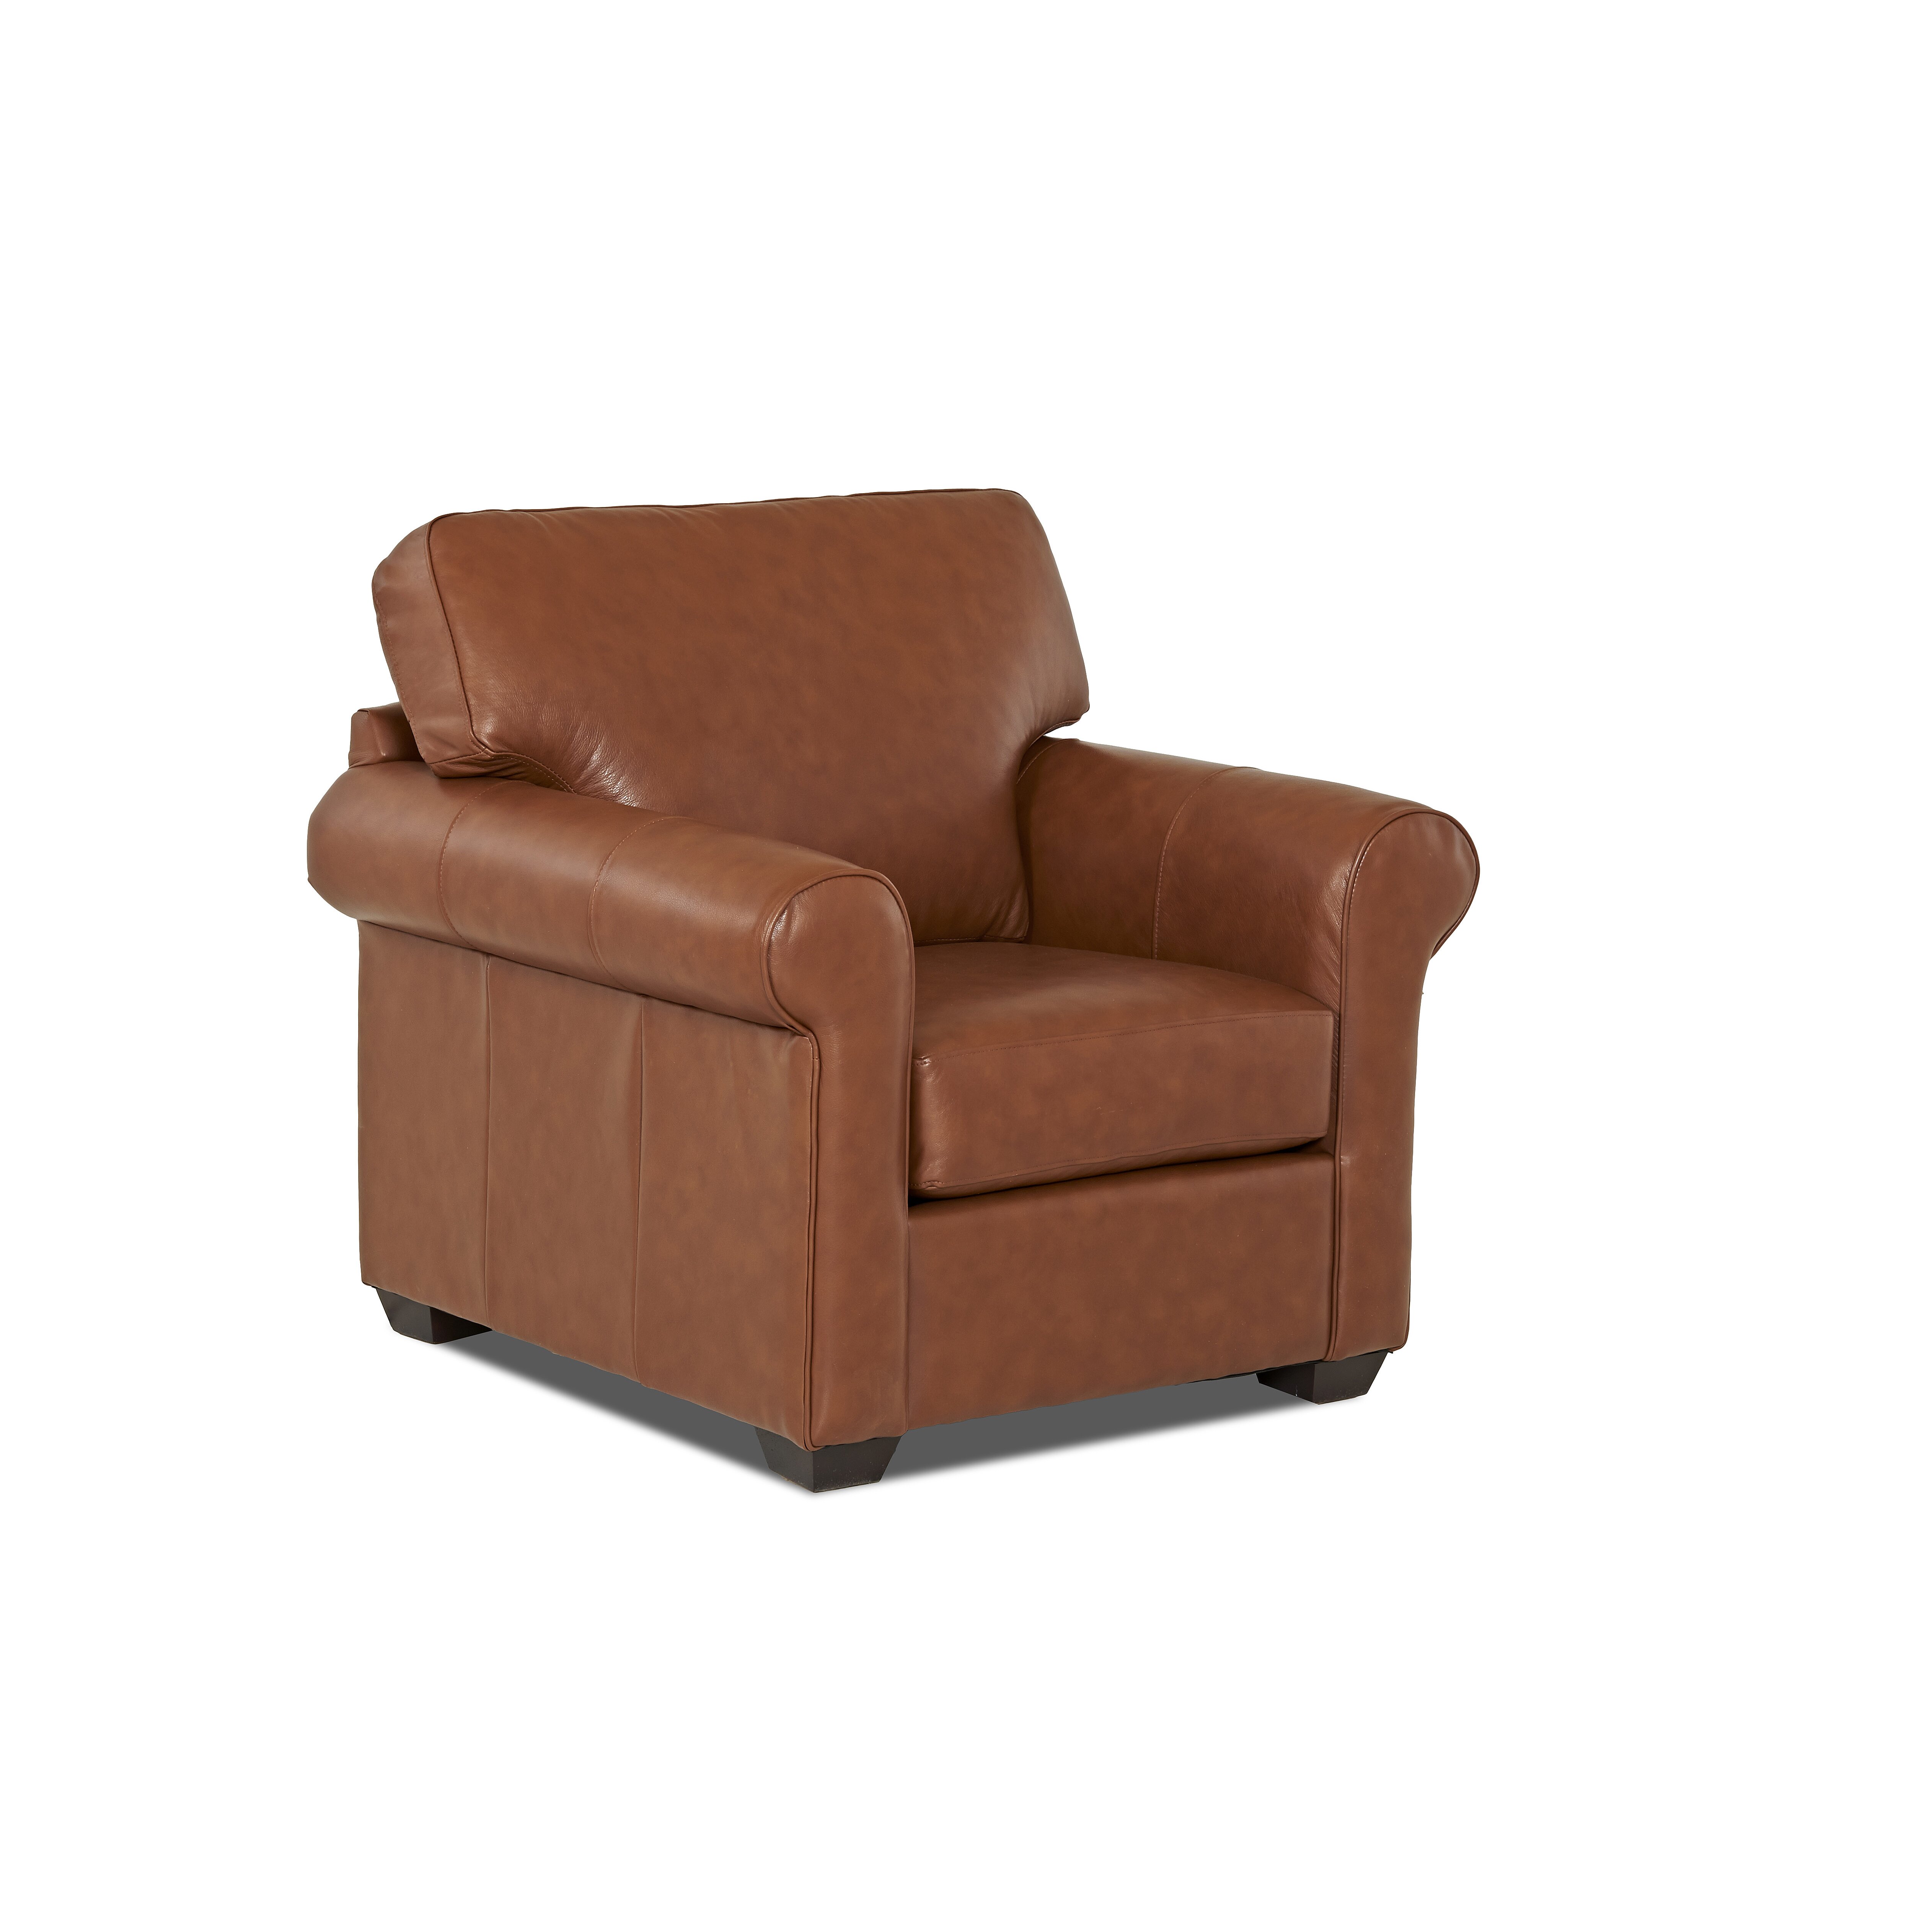 Wayfair Custom Upholstery Rachel Leather Arm Chair ...